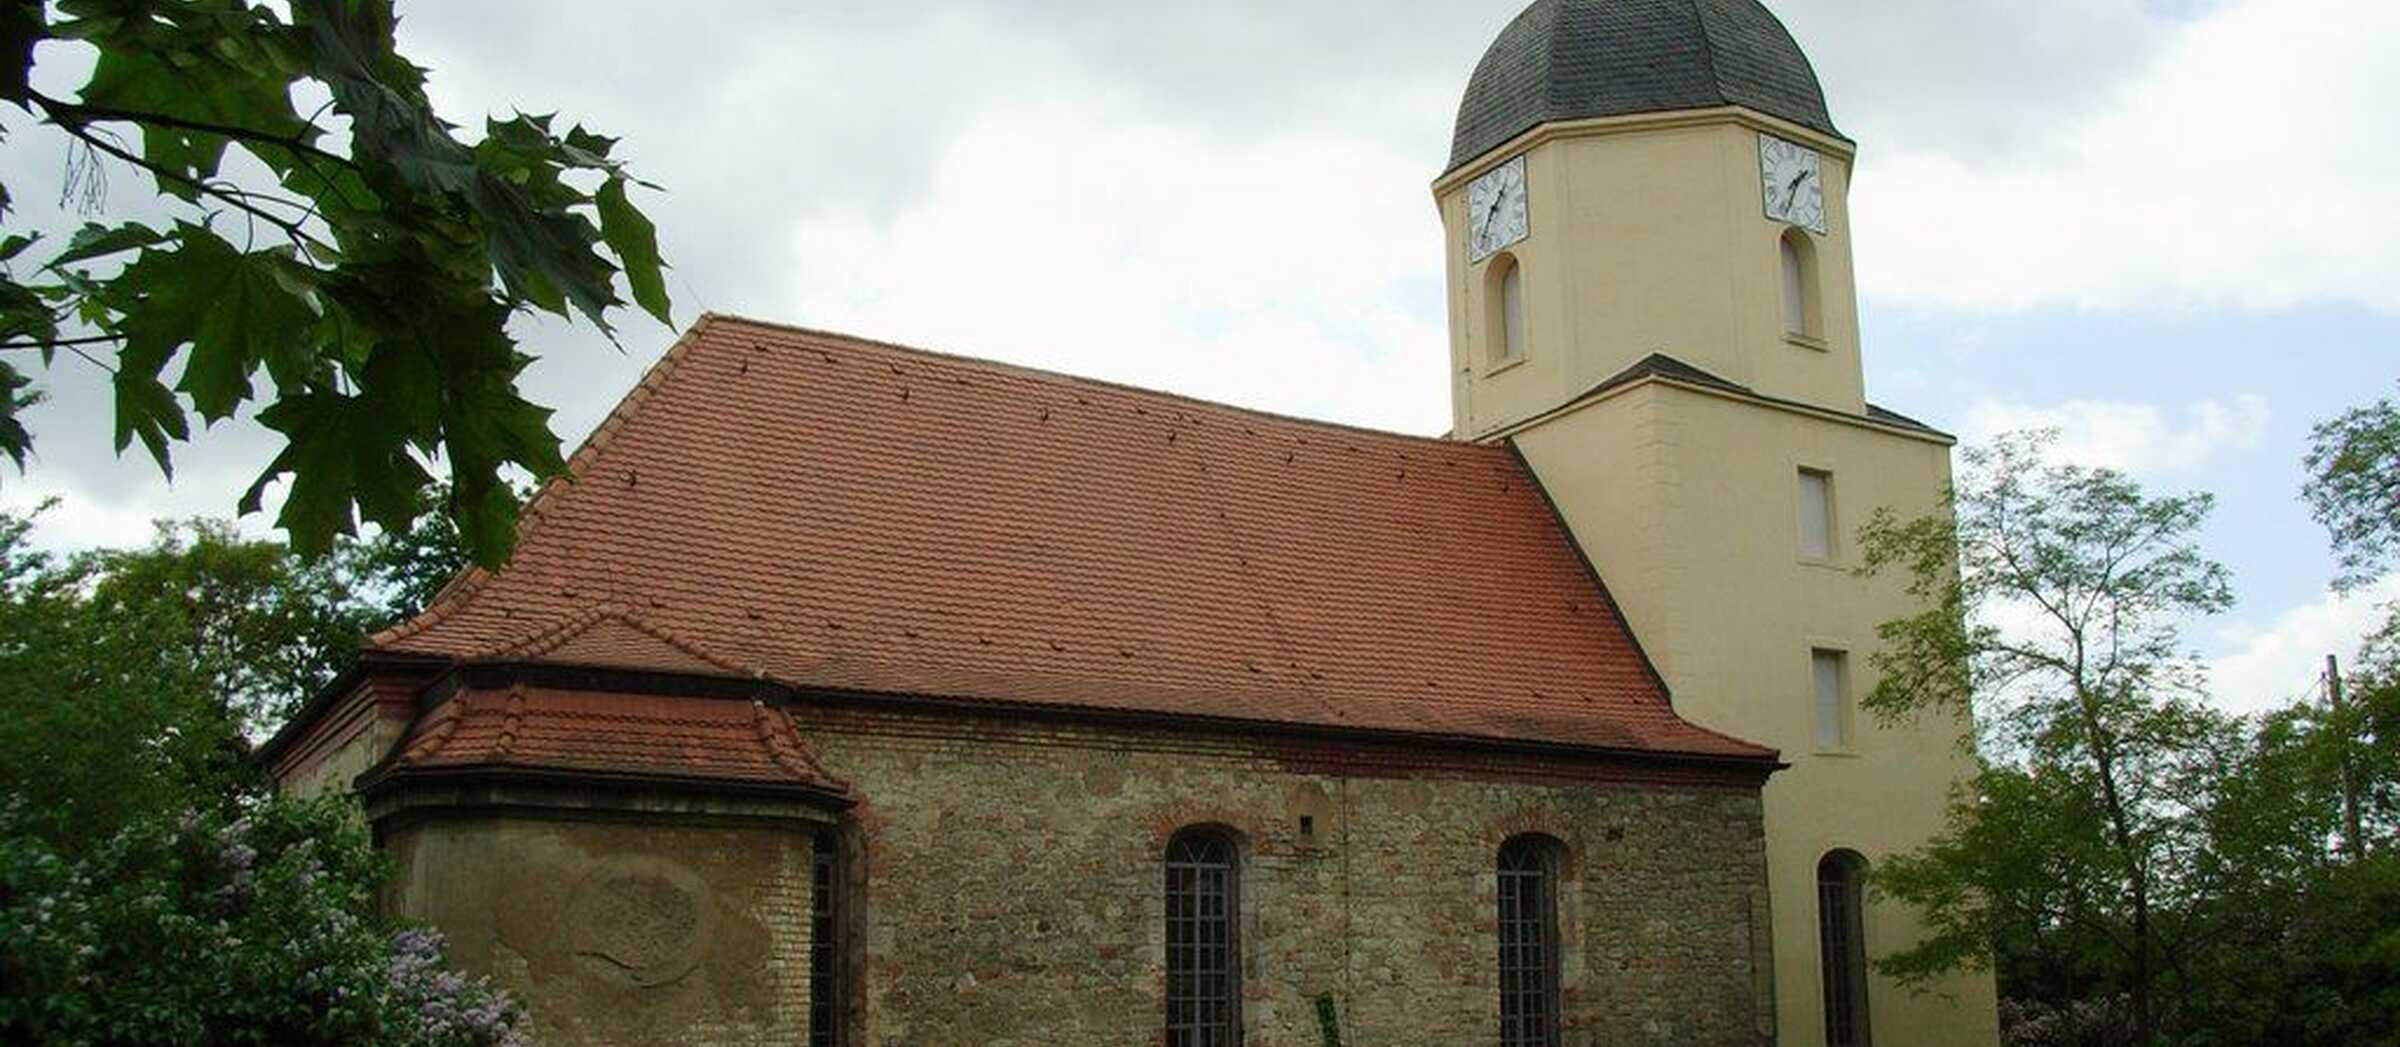 St. Katharinen-Kirche Ammendorf